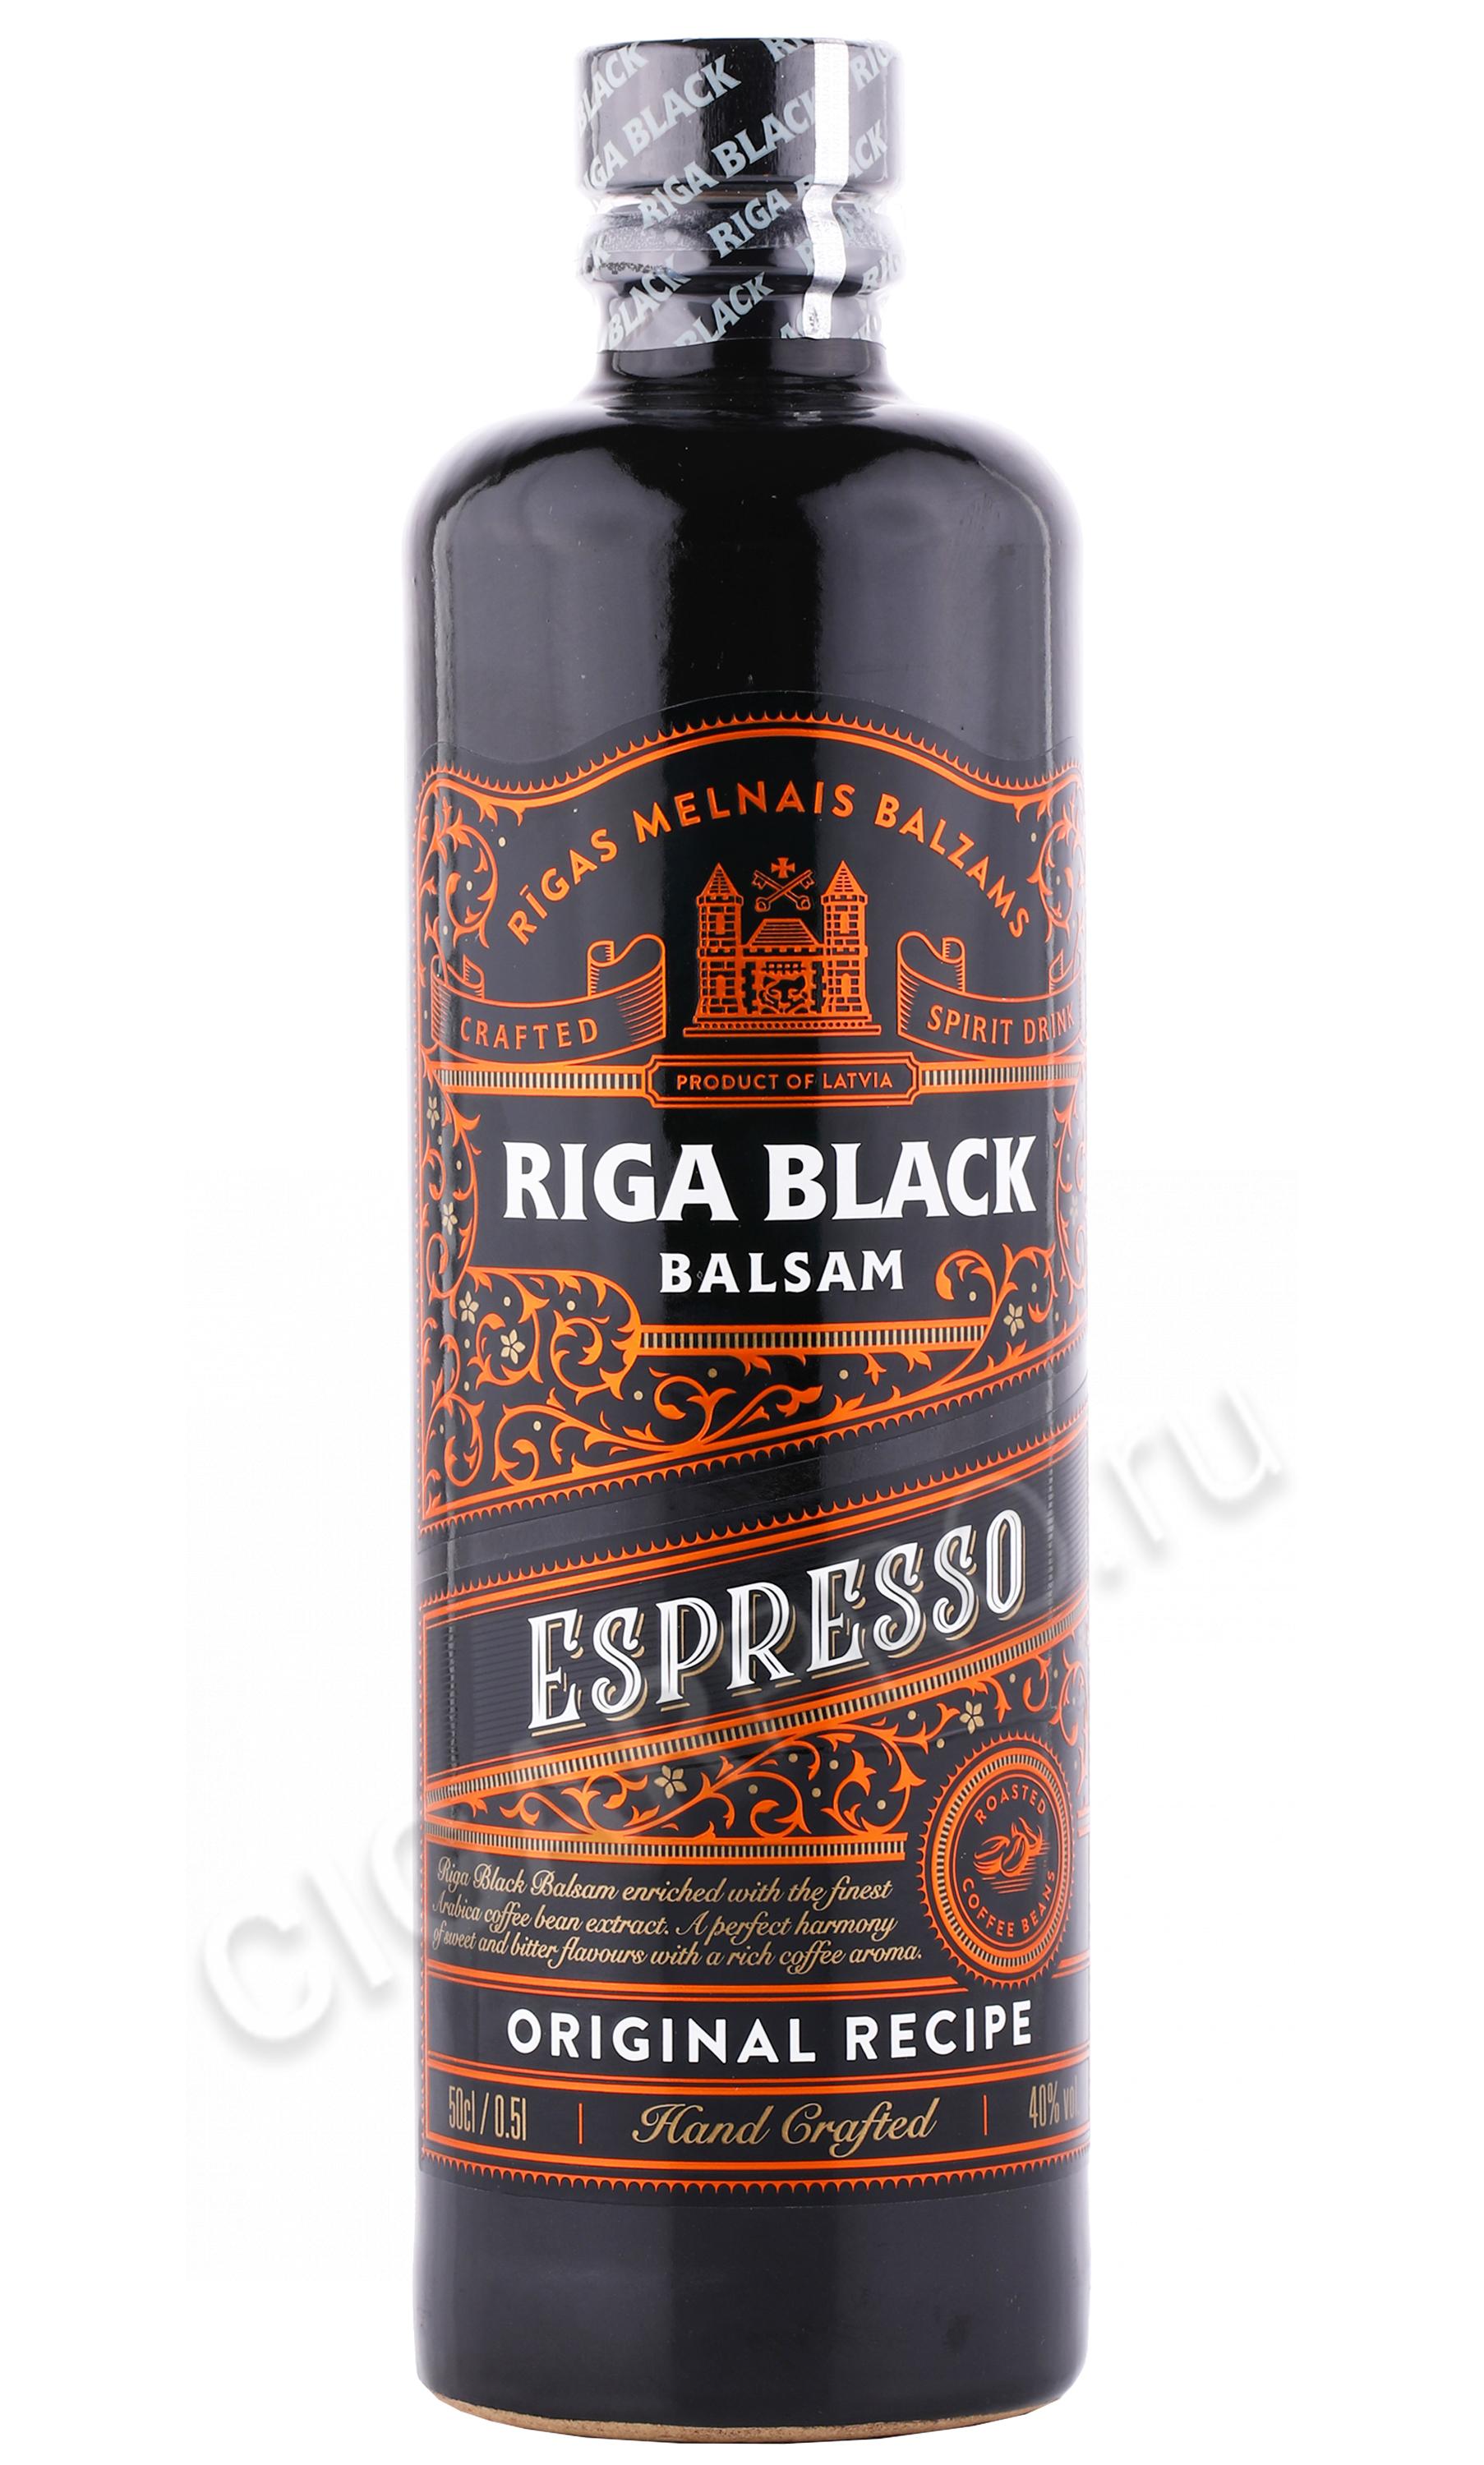 Бальзам 0.5 цена. Бальзам Riga Black balsam 0,5 л. Бальзам Рижский черный бальзам 45% 0,5л. Бальзам Рижский черный 0.5. Рижский бальзам эспрессо.